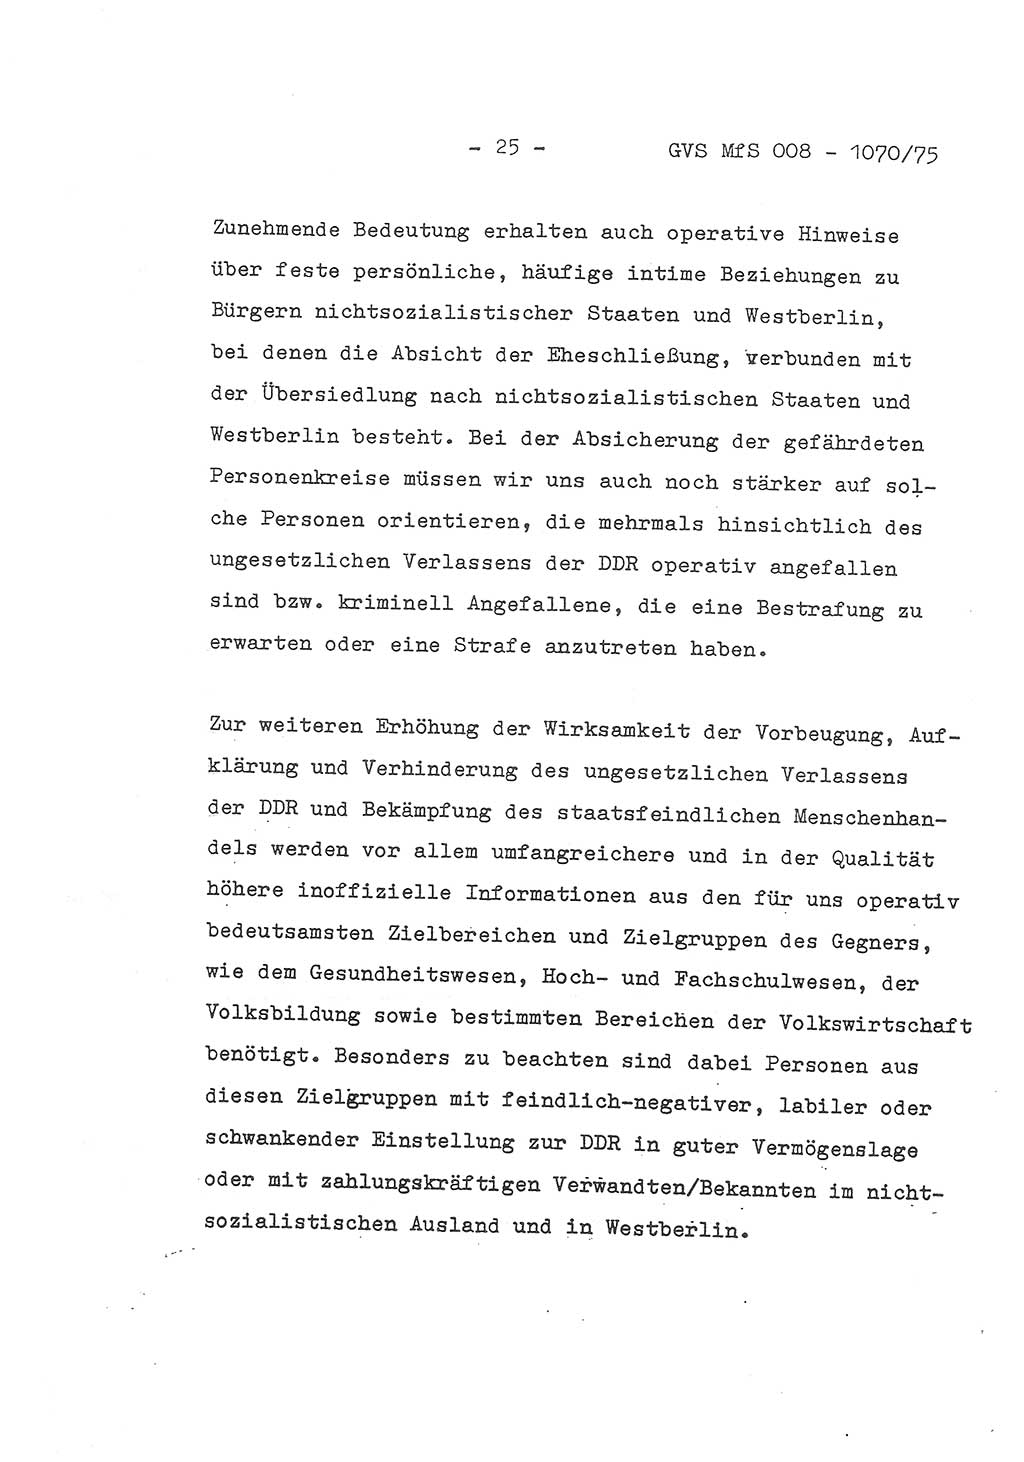 Auszug aus dem Referat des Genossen Minister (Generaloberst Erich Mielke) für das zentrale Führungsseminar (MfS) zu Grundfragen der Arbeit mit den inoffiziellen Mitarbeitern (IM), Manuskript, Deutsche Demokratische Republik (DDR), Ministerium für Staatssicherheit (MfS), Der Minister, Geheime Verschlußsache (GVS) 008-1070/75, Berlin 1975, Blatt 25 (Ref. Fü.-Sem. DDR MfS Min. GVS 008-1070/75 1975, Bl. 25)